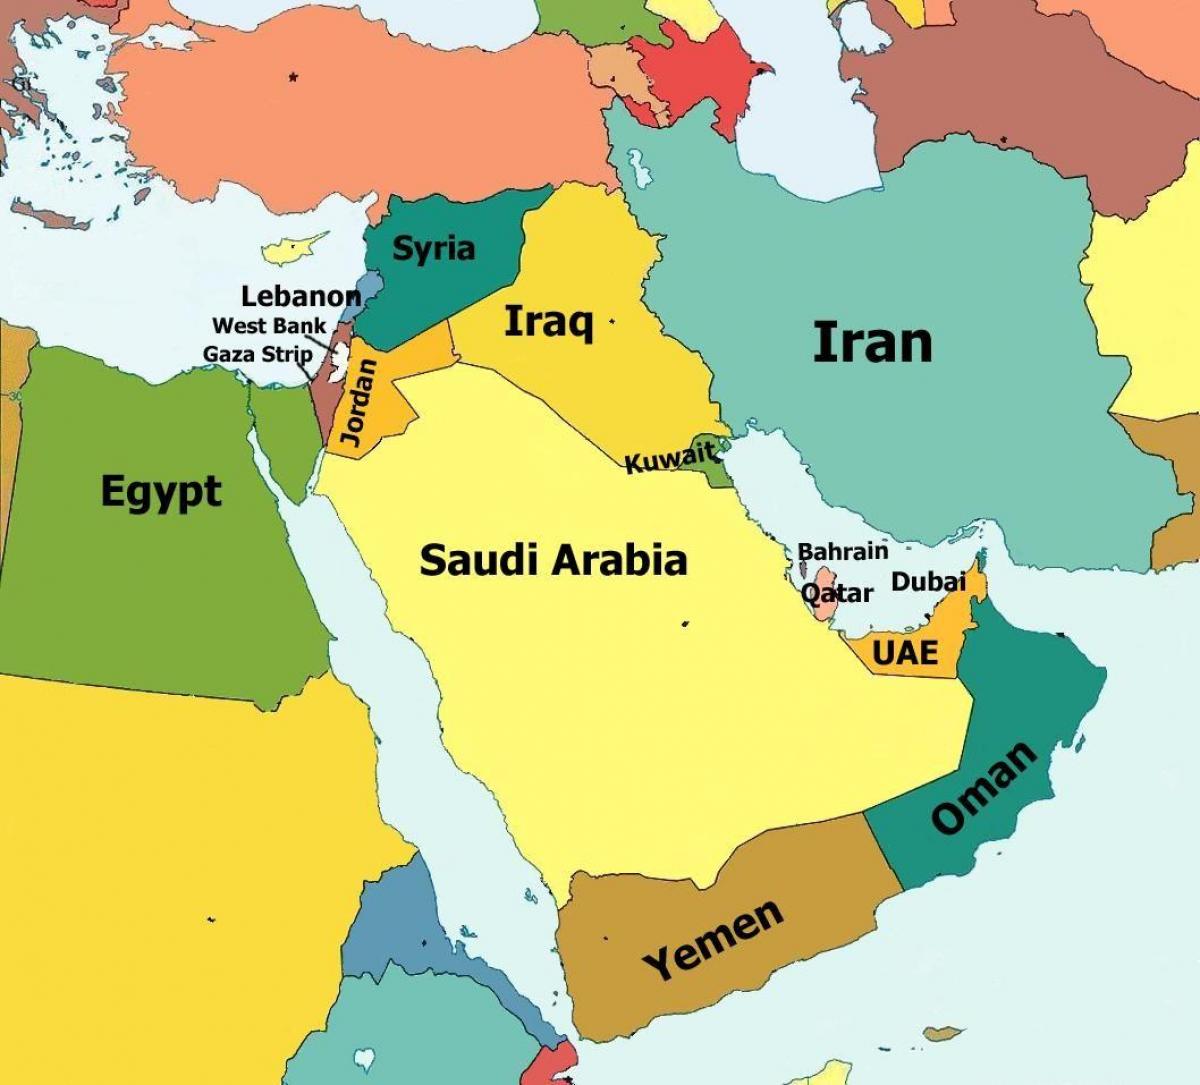 عمان کشور در نقشه جهان